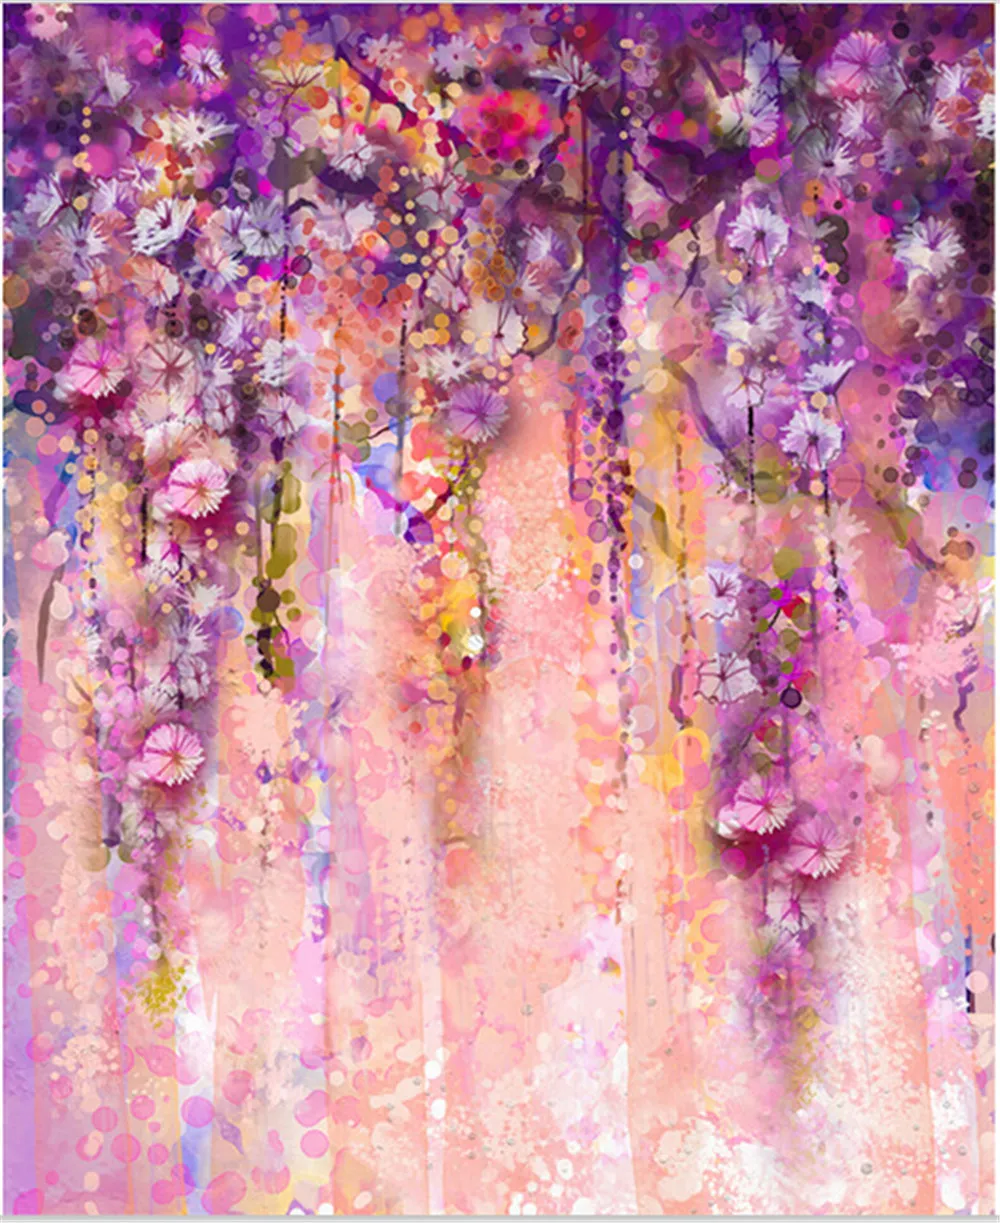 النفط اللوحة الزهور الخلفيات الأرجواني الملونة الزهور الوليد الطفل صور بوث الدعائم الأطفال استوديو خلفية عيد